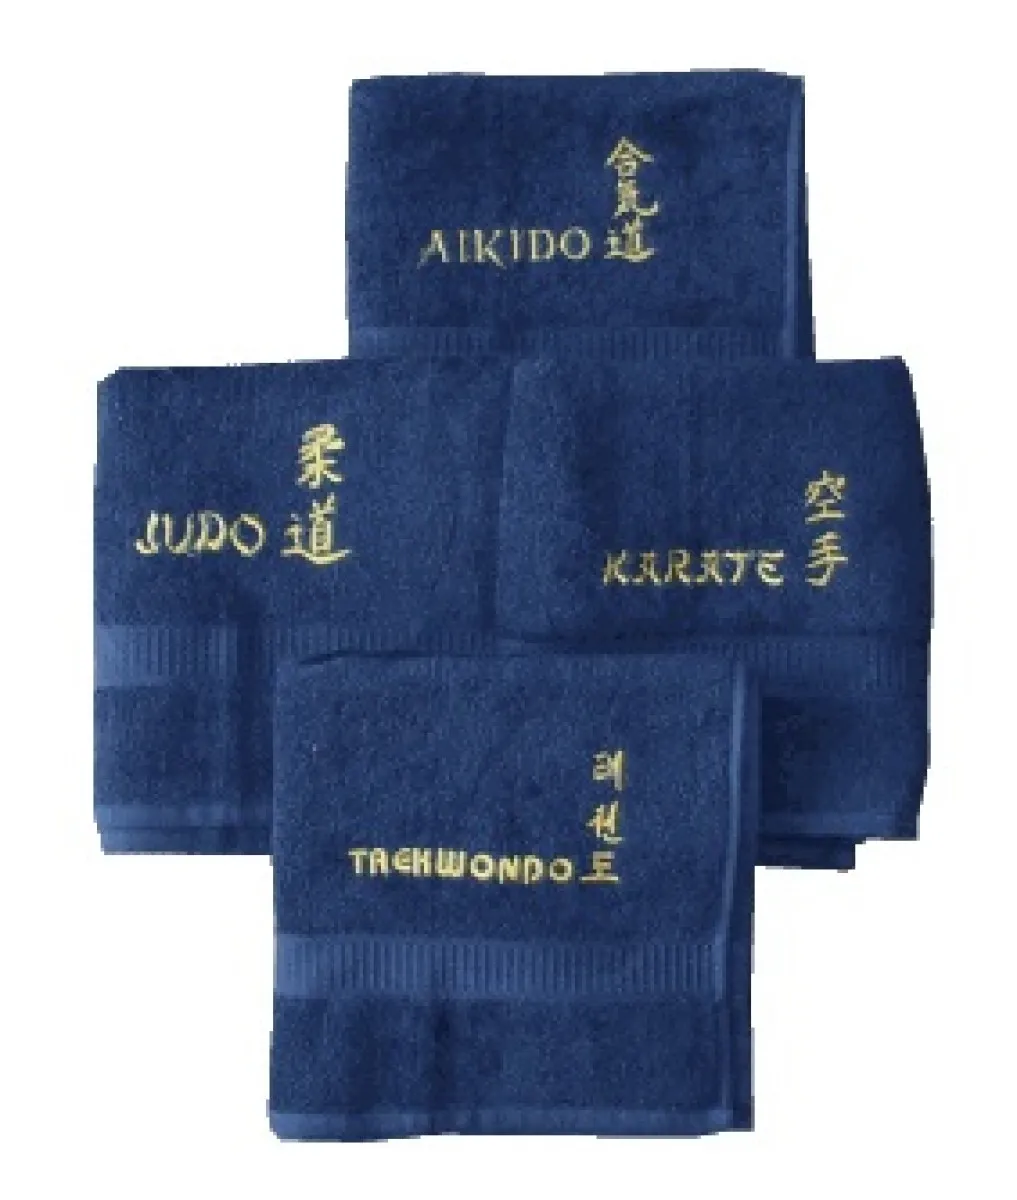 Badstof donkerblauw geborduurd met karate in goud